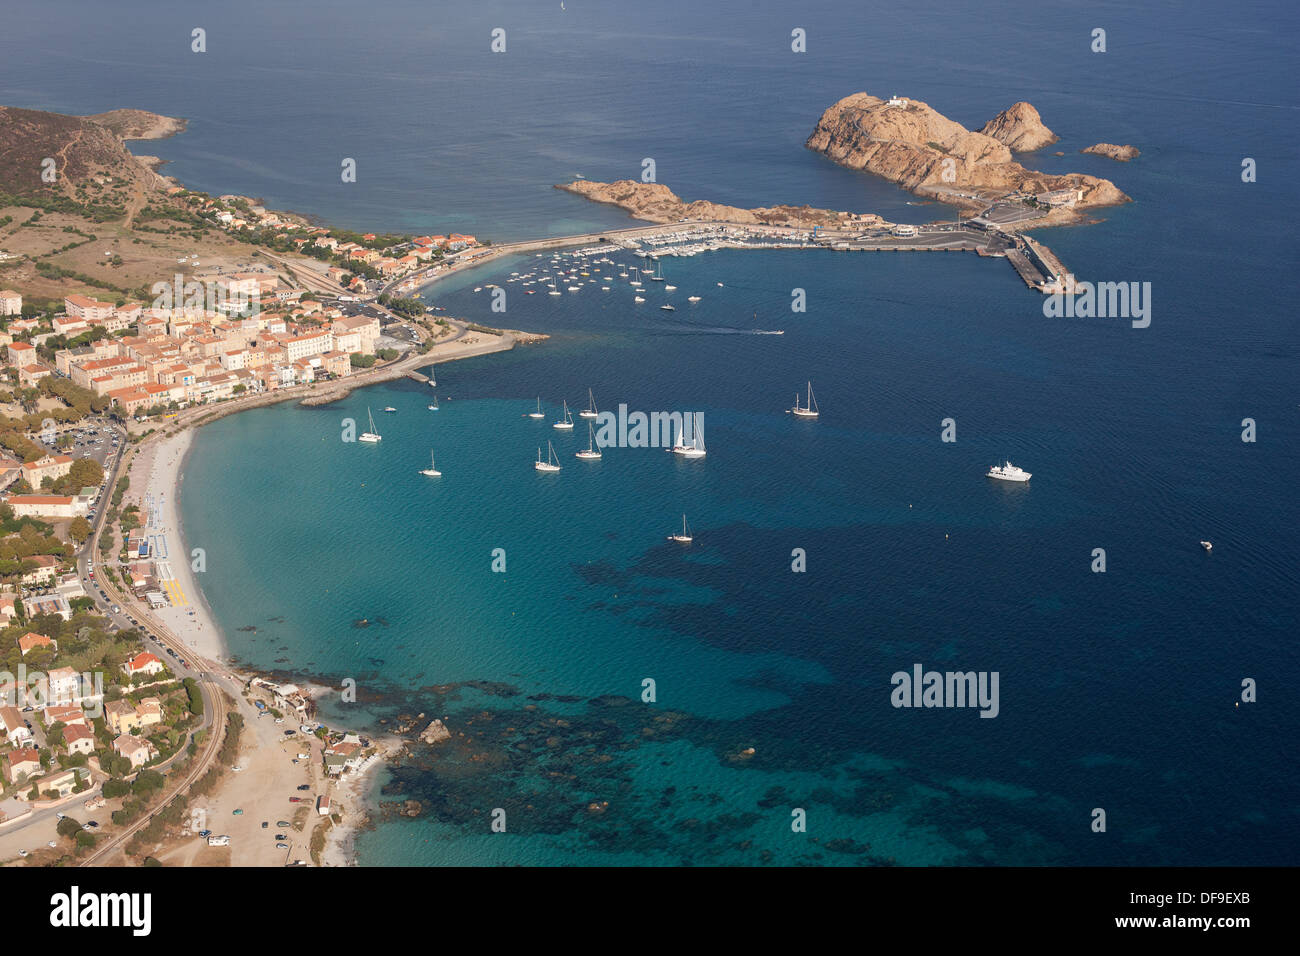 VISTA AEREA. Città di Île Rousse con la sua città vecchia, spiagge, porto turistico e terminal dei traghetti. Corsica, Francia. Foto Stock